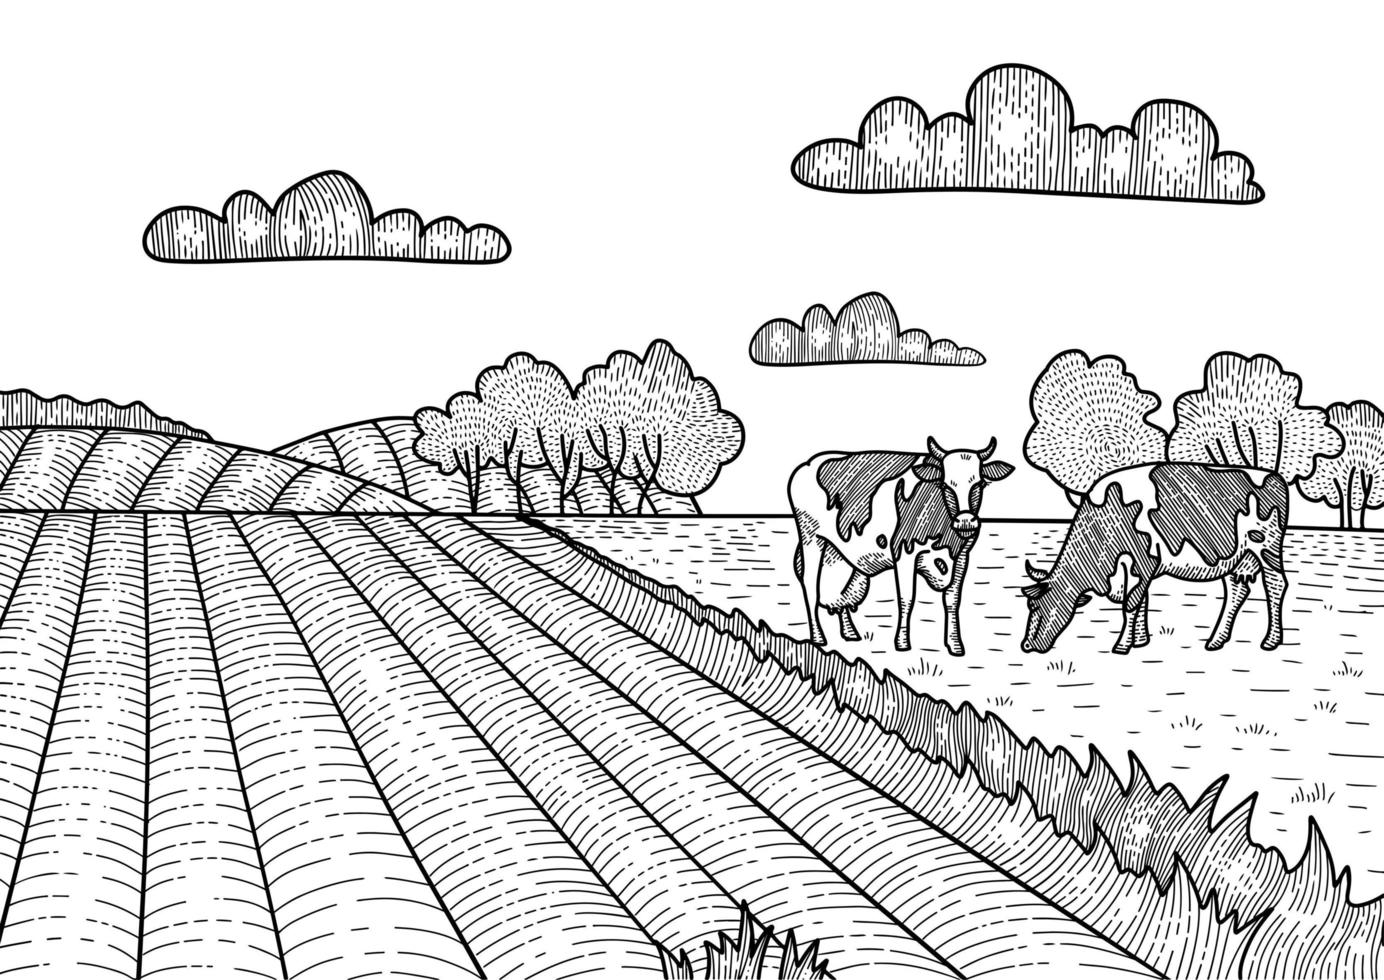 mucche al pascolo sul prato. villaggio, fattoria paesaggistica. illustrazione di schizzo lineare disegnato a mano. vettore